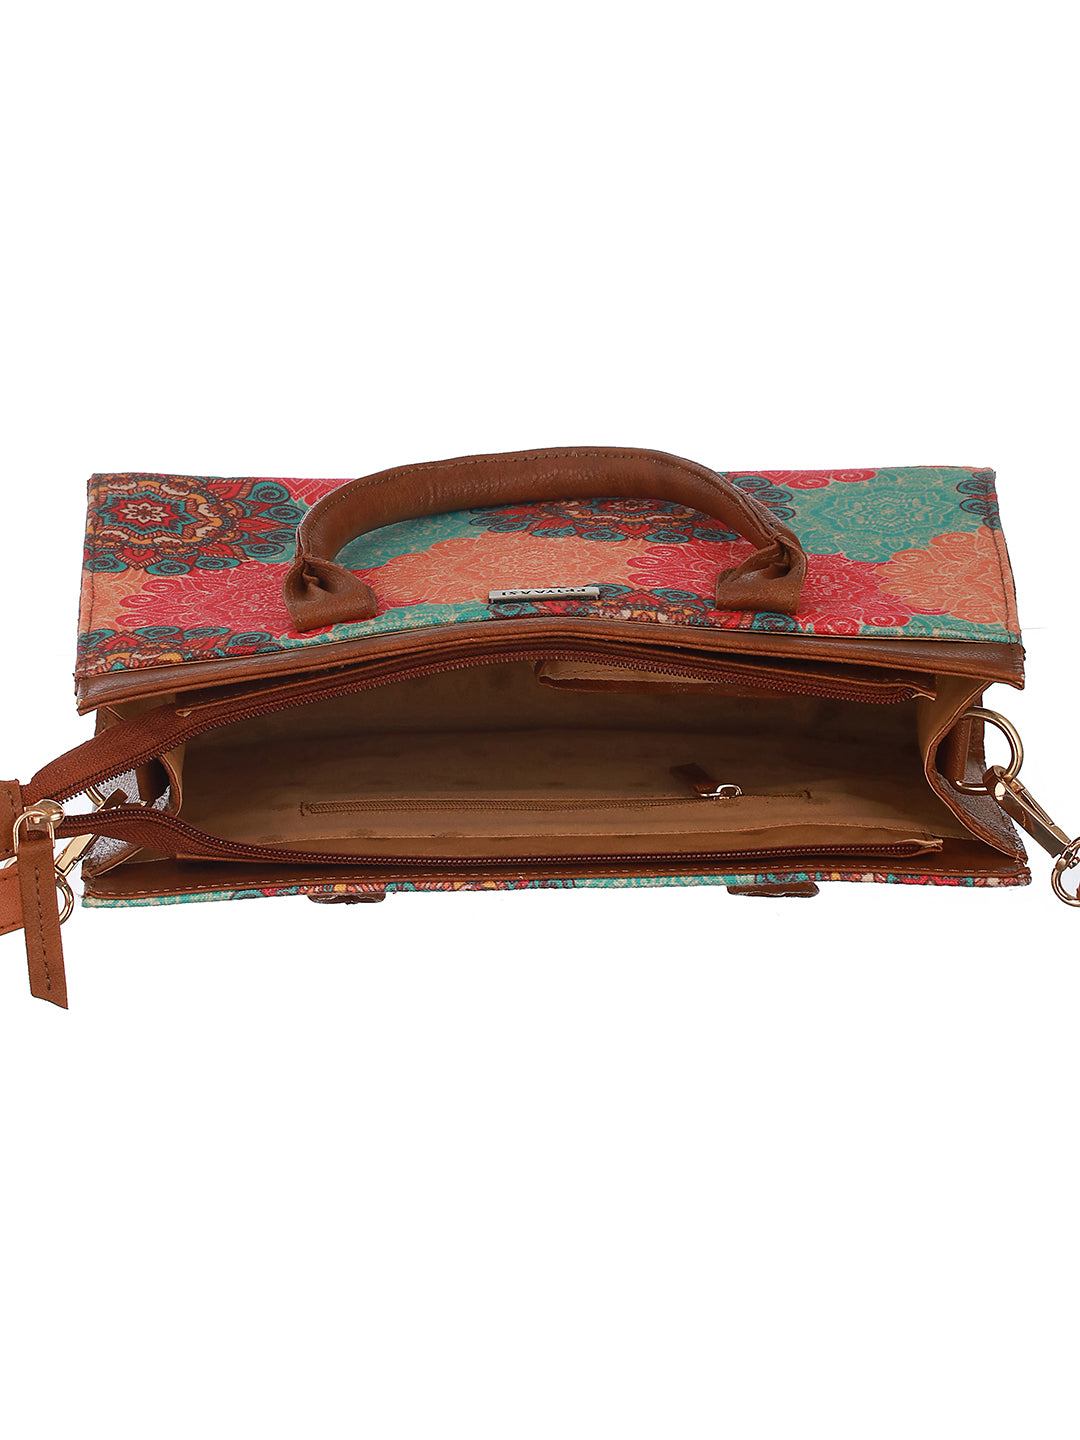 PhoolChakra Multicolor Printed Brown Handbag